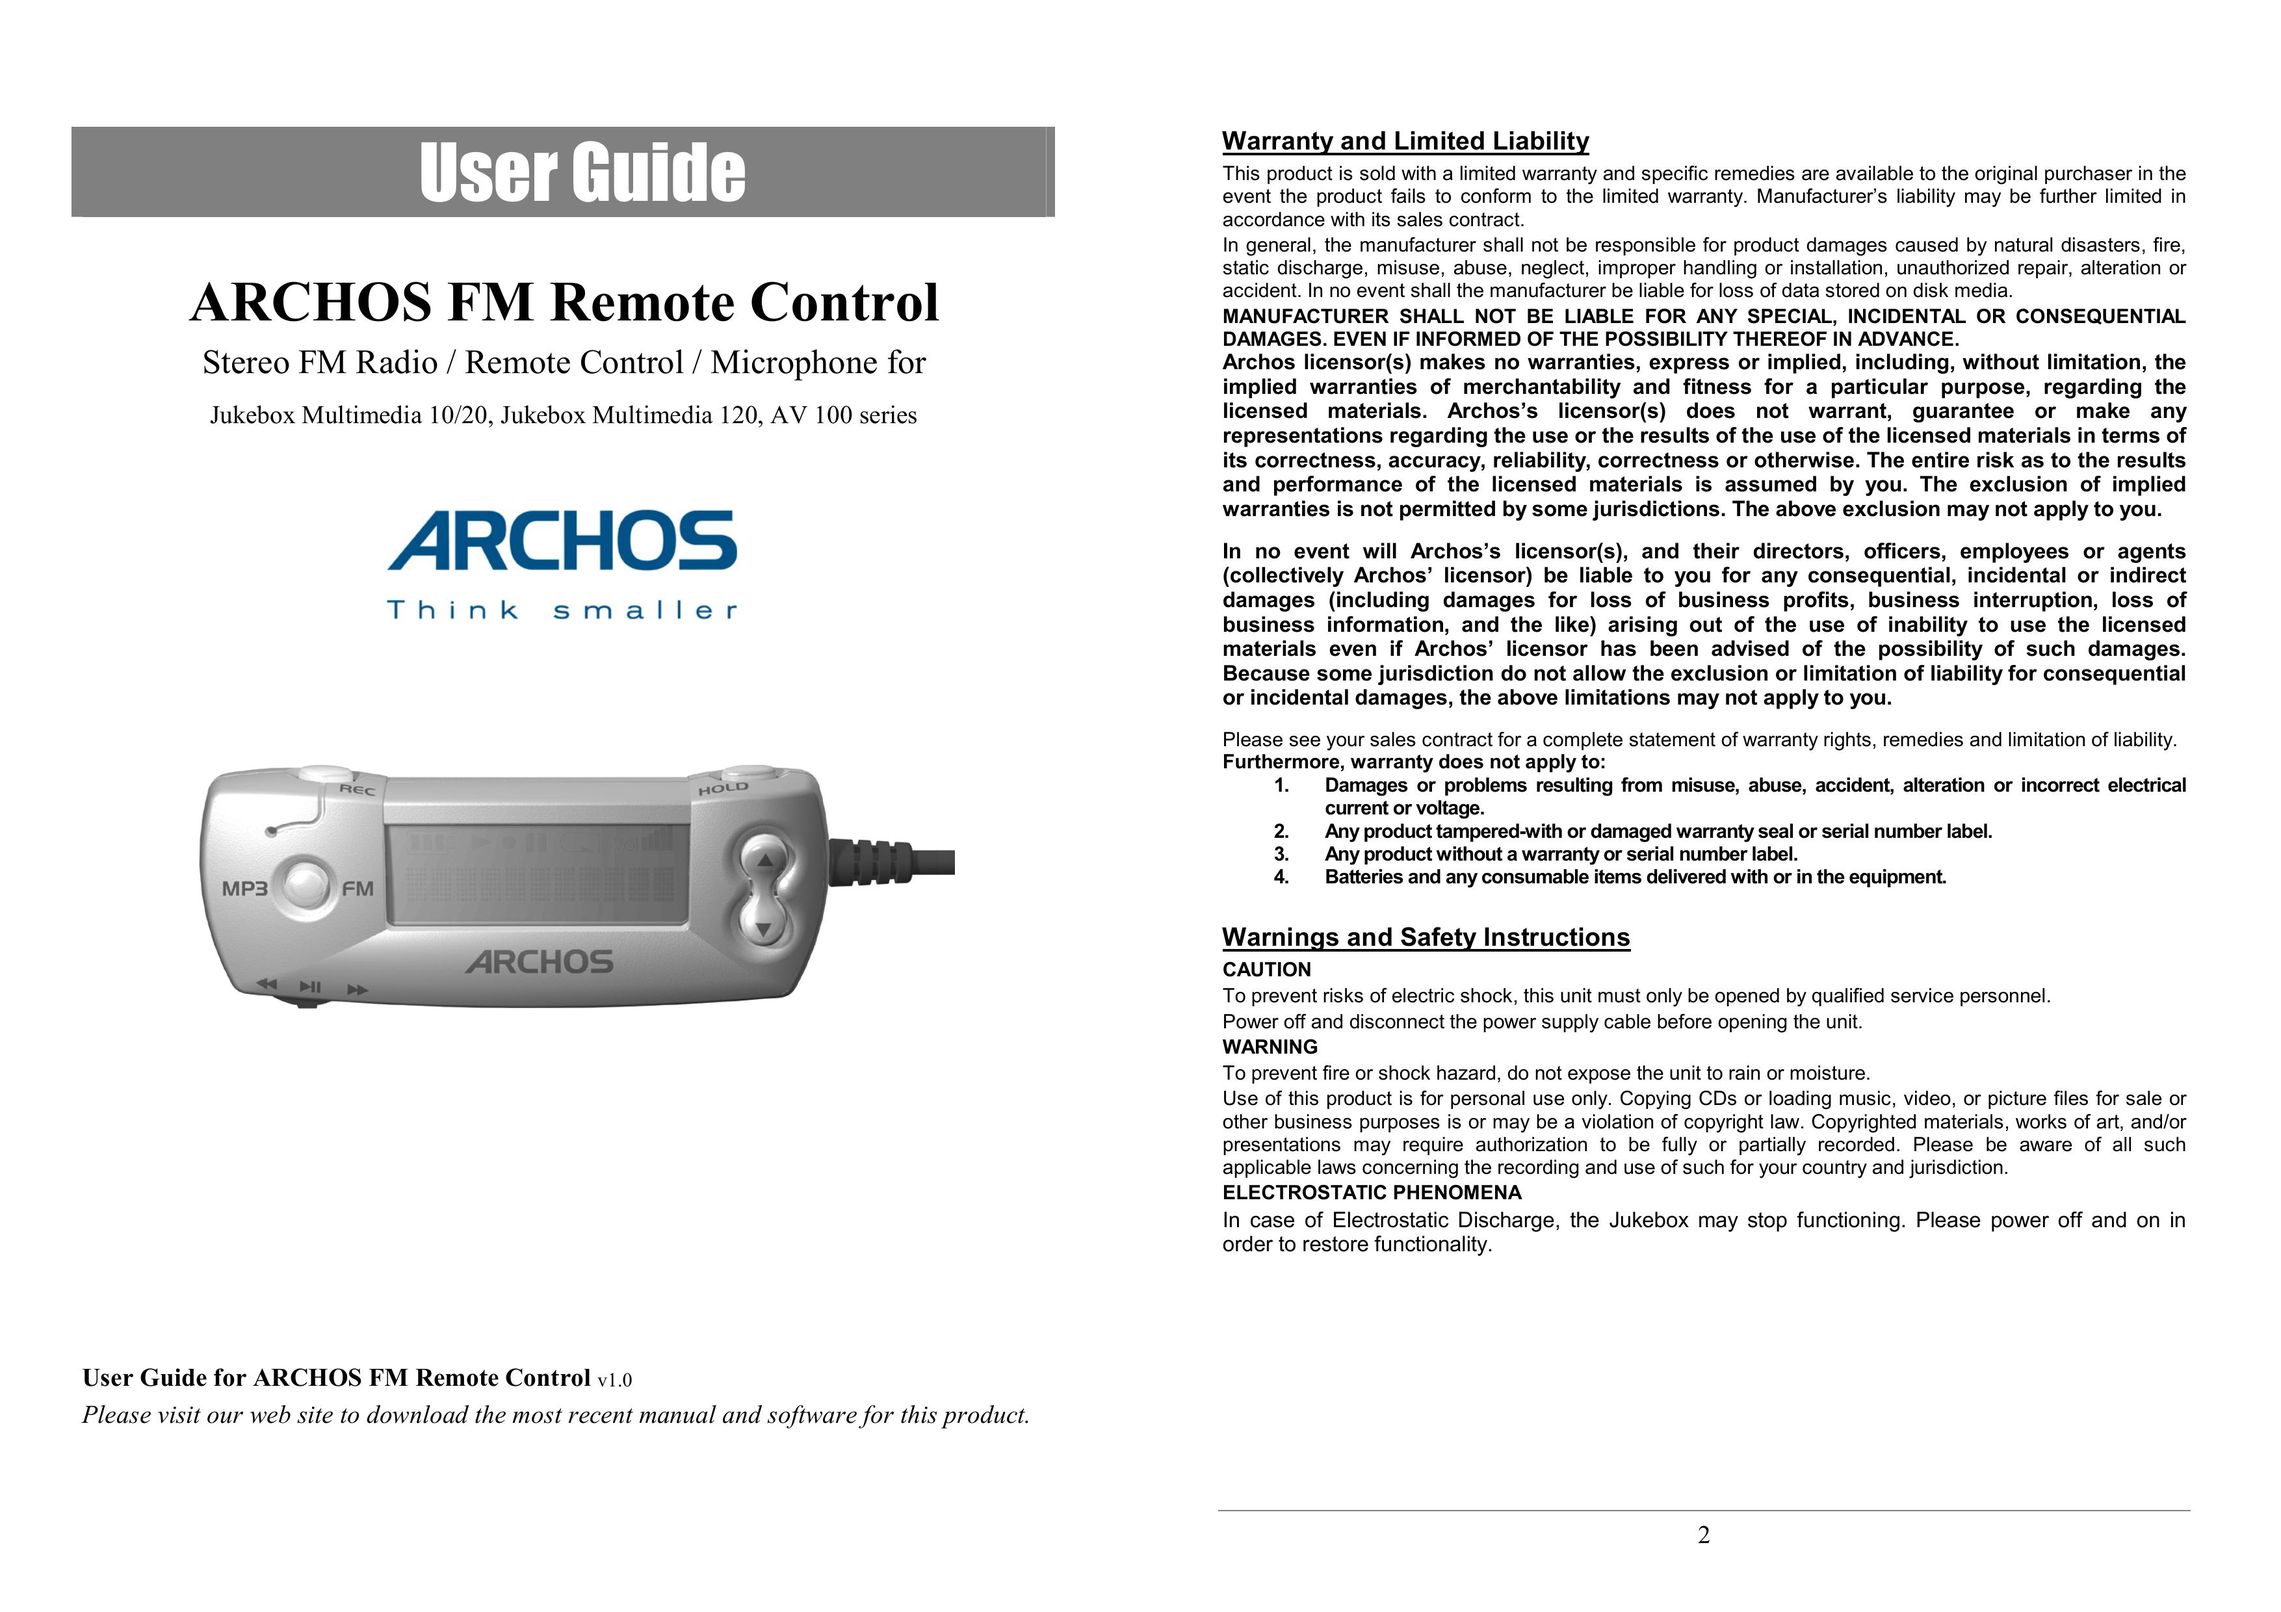 Archos AV100 Universal Remote User Manual